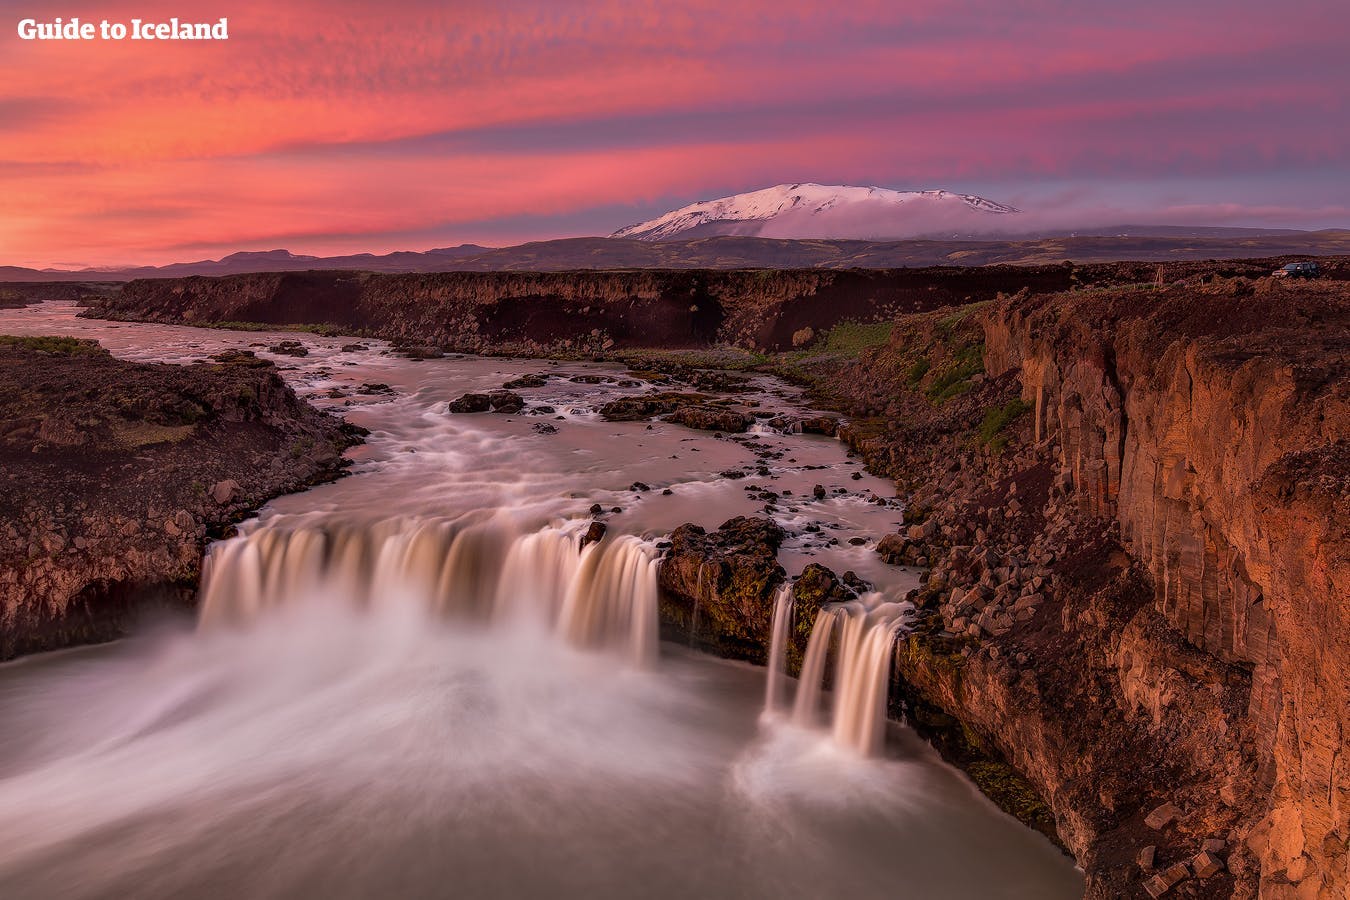 冰岛北部午夜阳光下的众神瀑布熠熠生辉